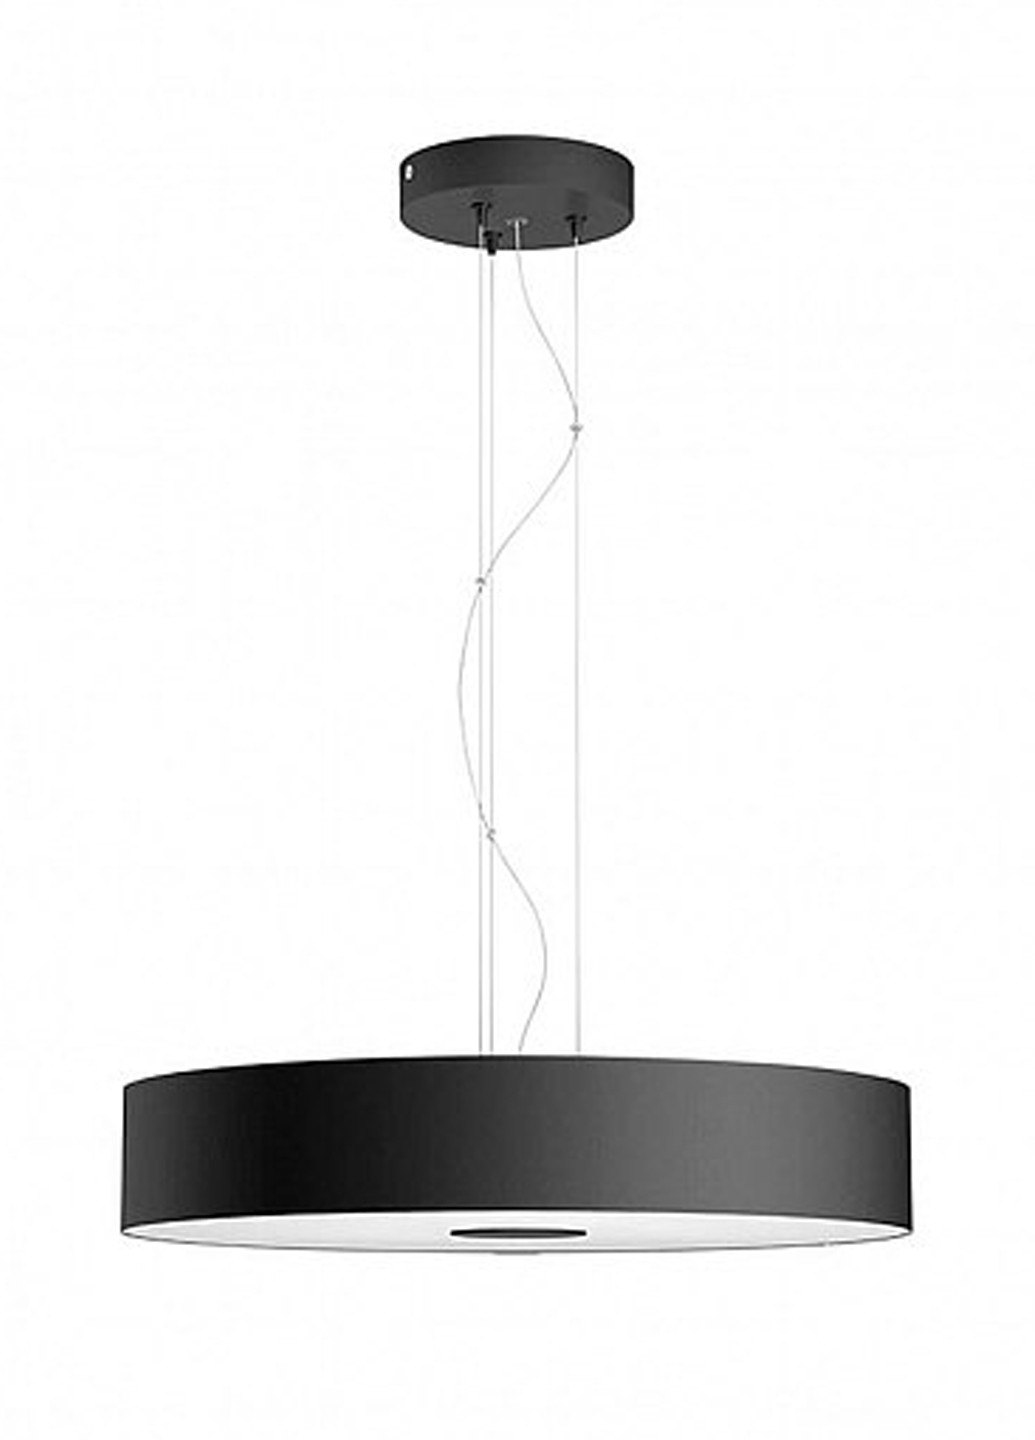 Смарт-світильник Fair Hue pendant black 1x39W (40339/30 / P7) Philips смарт fair hue pendant black 1x39w (40339/30/p7) (142289775)